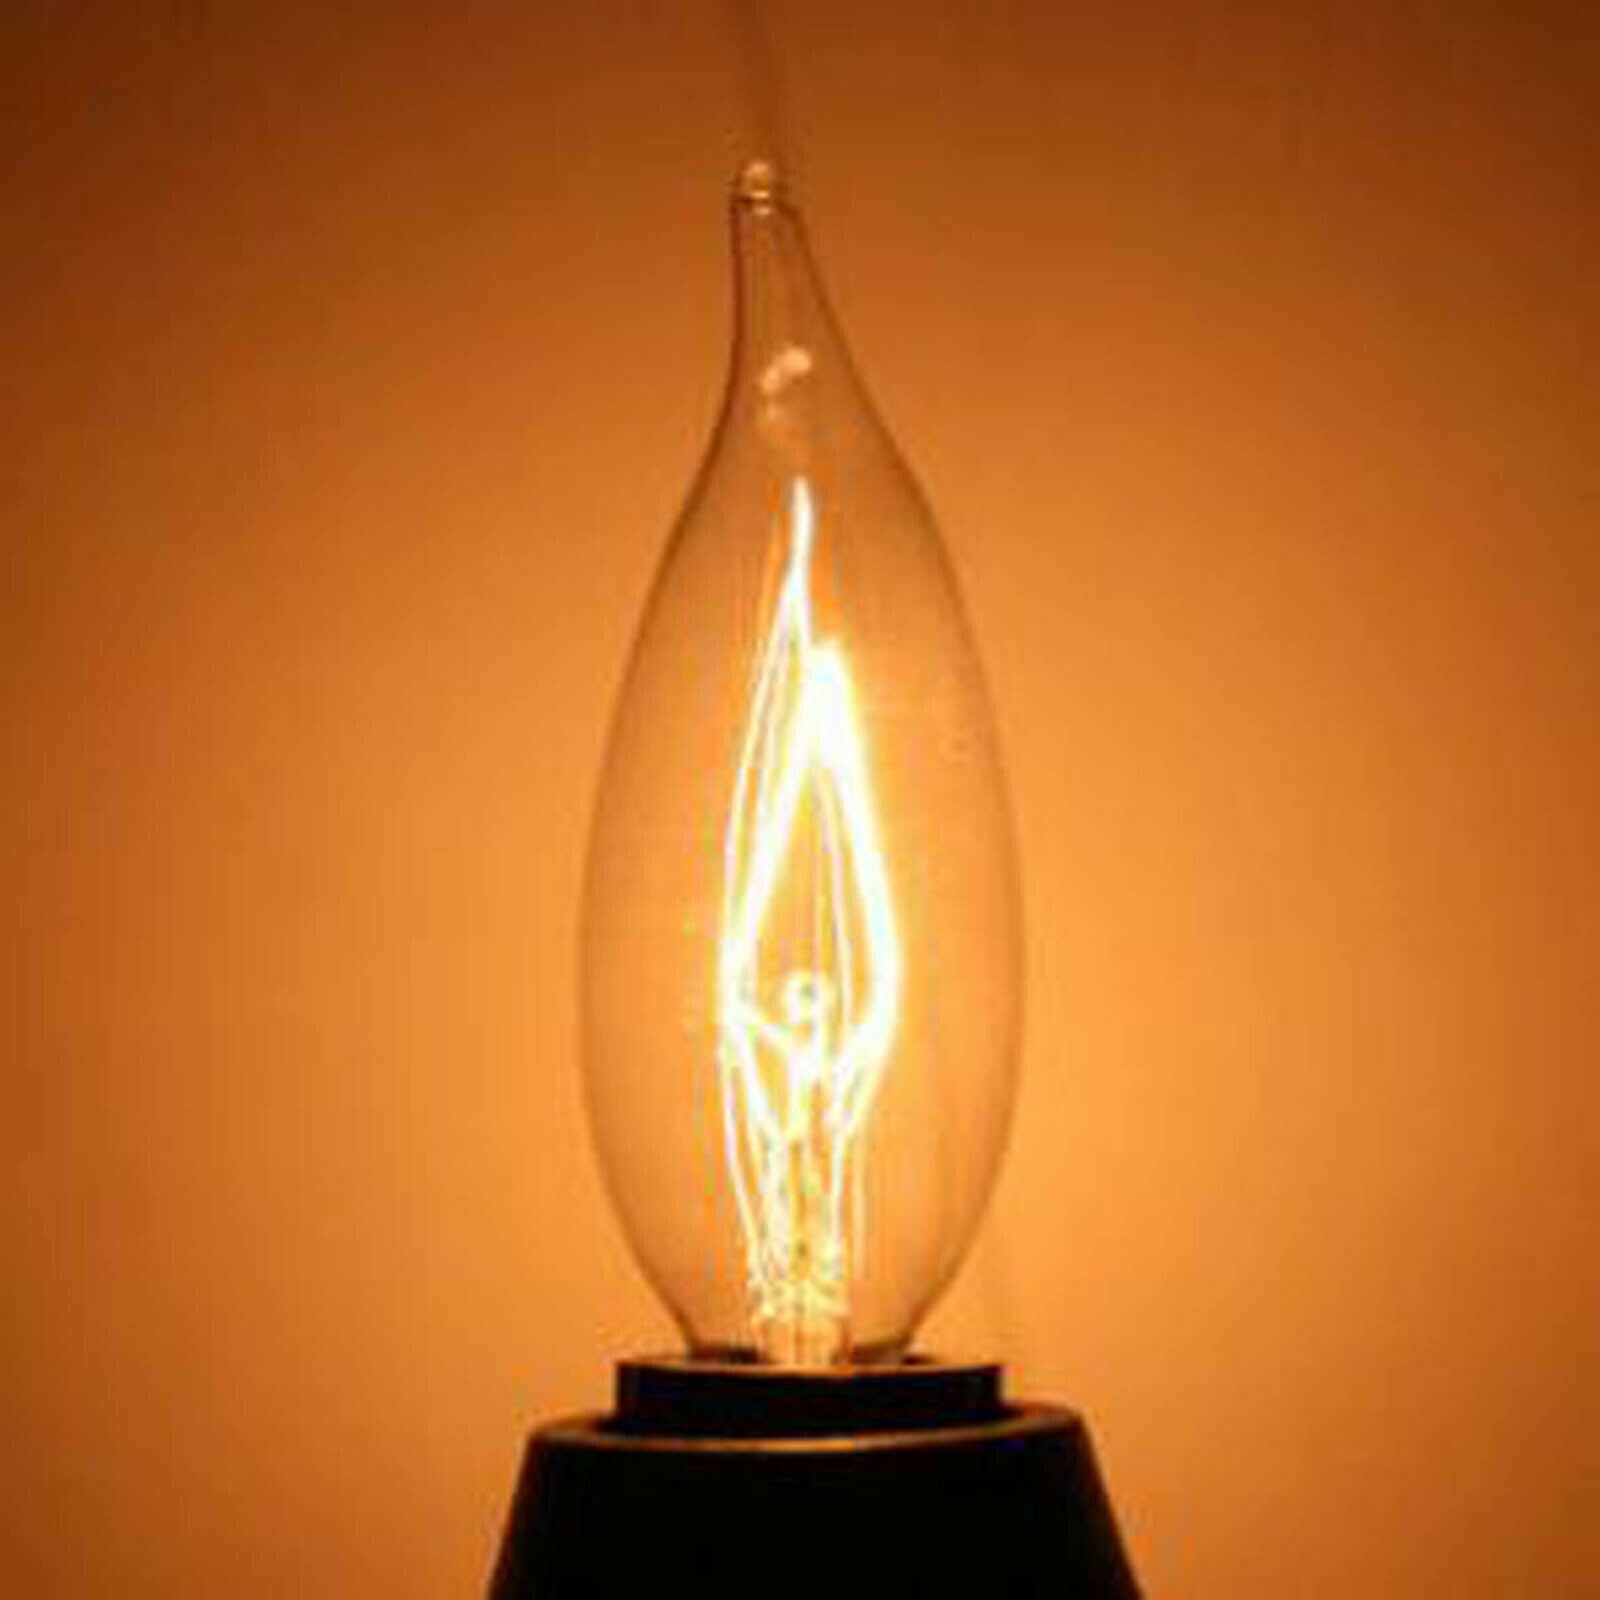 E14 Candle Style Light Bulb